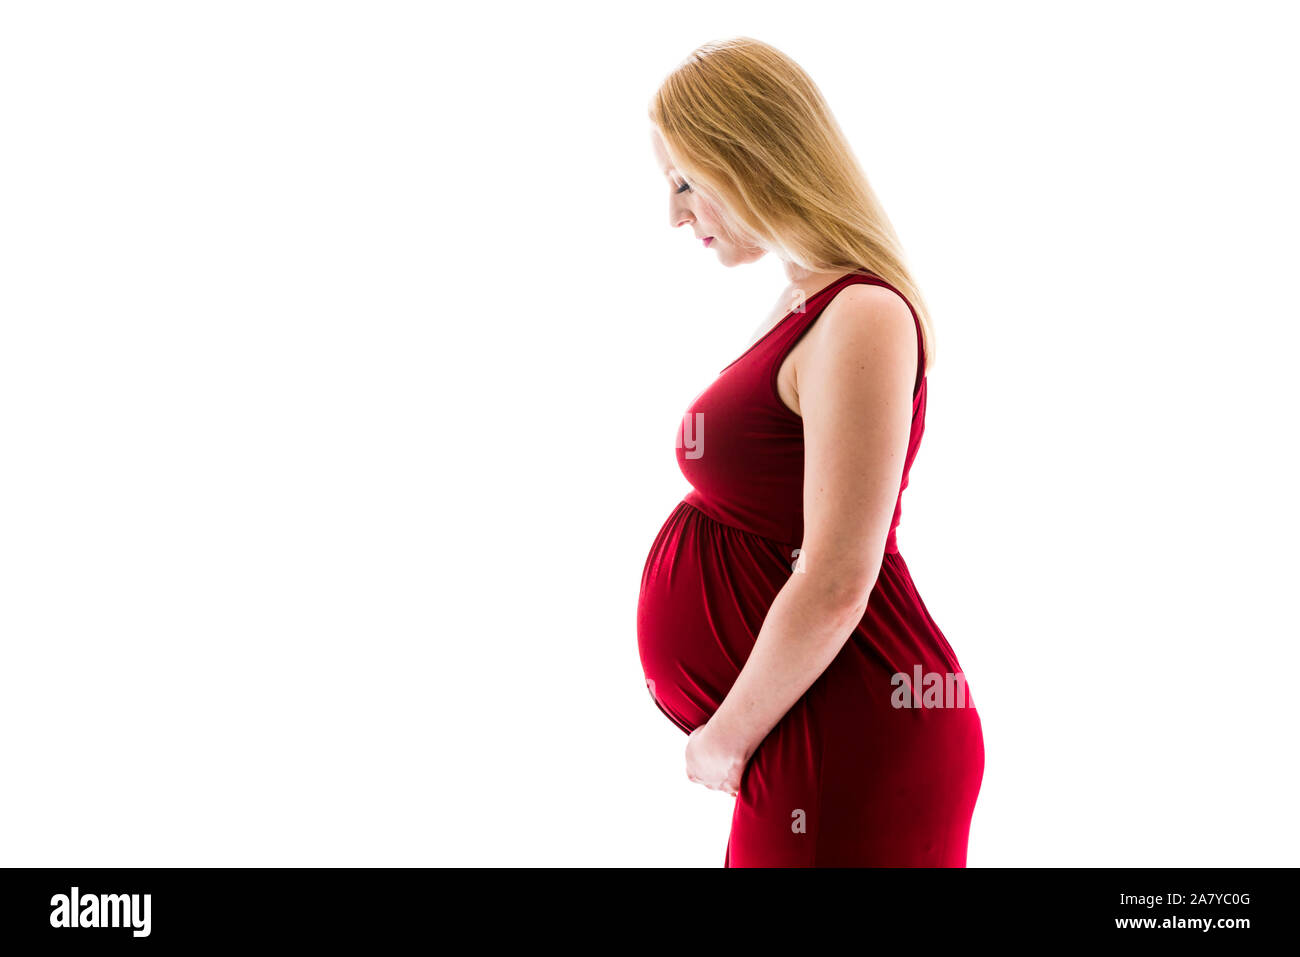 Schwangere Frau im roten Kleid Bauch halten auf weißem Hintergrund. Portrait von aufgeregt, fröhlich, blond, junge Frau in der Schwangerschaft studio schießen. Konzept der mat Stockfoto